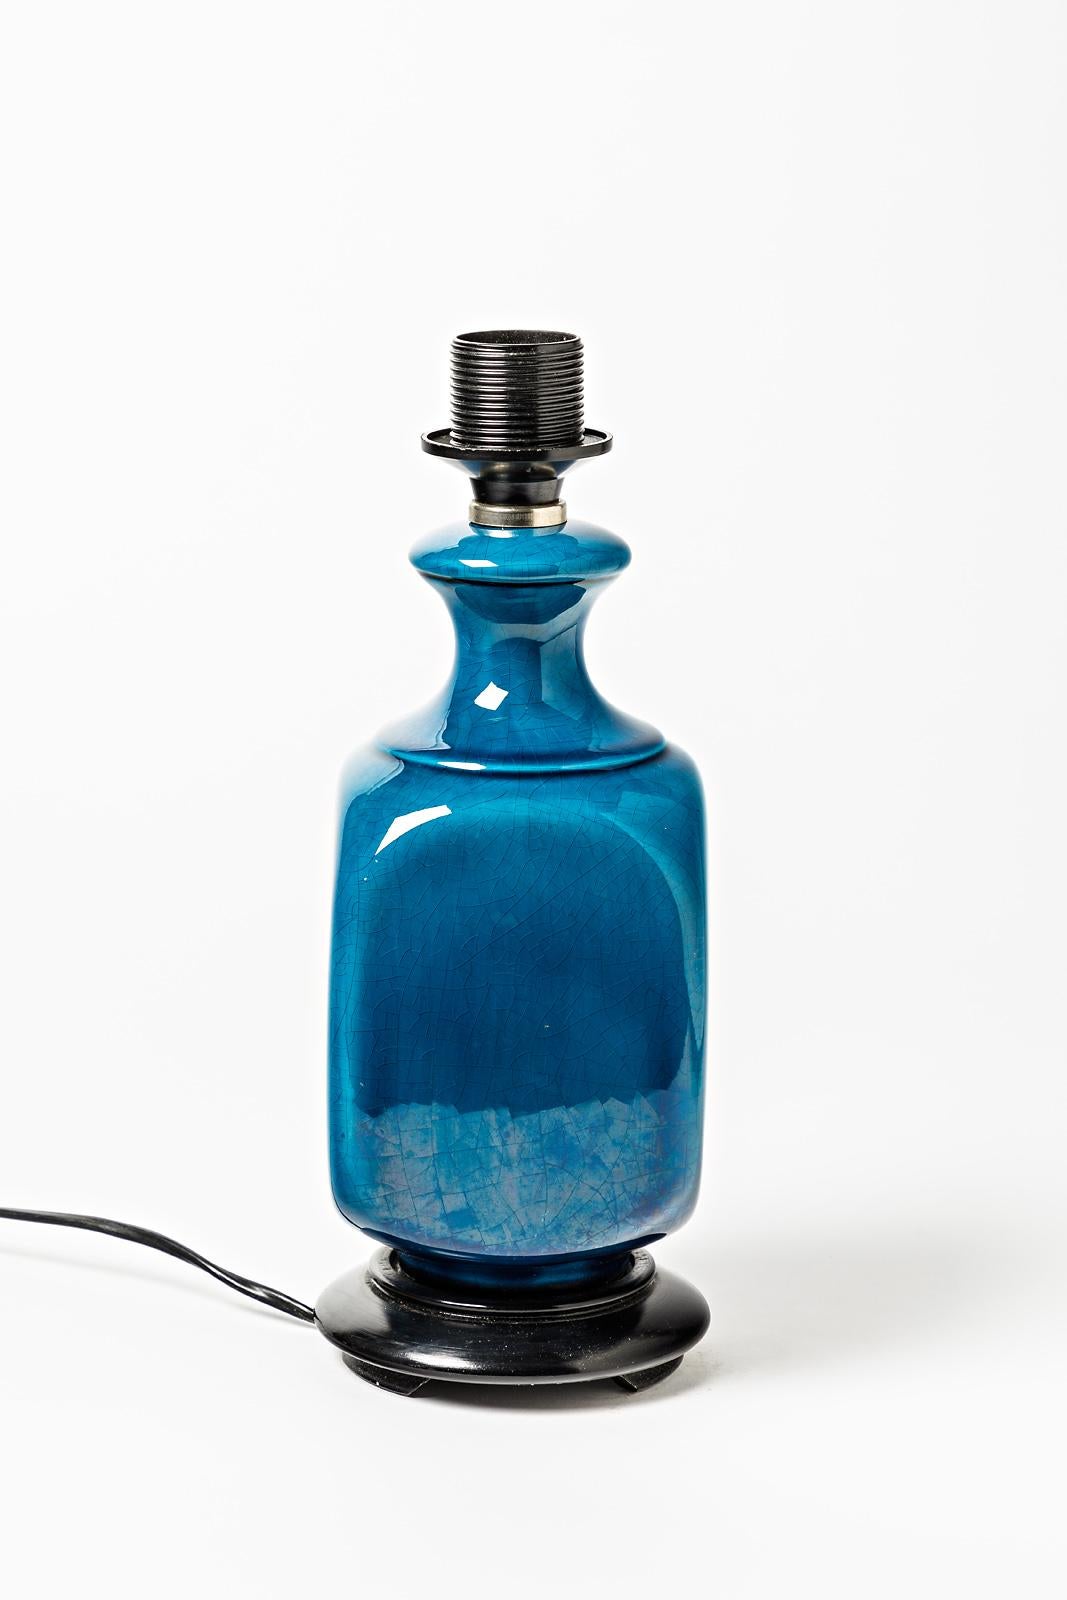 Elegante Tischlampe aus Keramik, um 1960.

Original perfekter Zustand für diese Beleuchtung aus der Mitte des 20

Glänzend blaue keramische Glasurfarbe

Elektrisches System ist in Ordnung

Verkauft ohne Lampenschirm

Abmessungen der